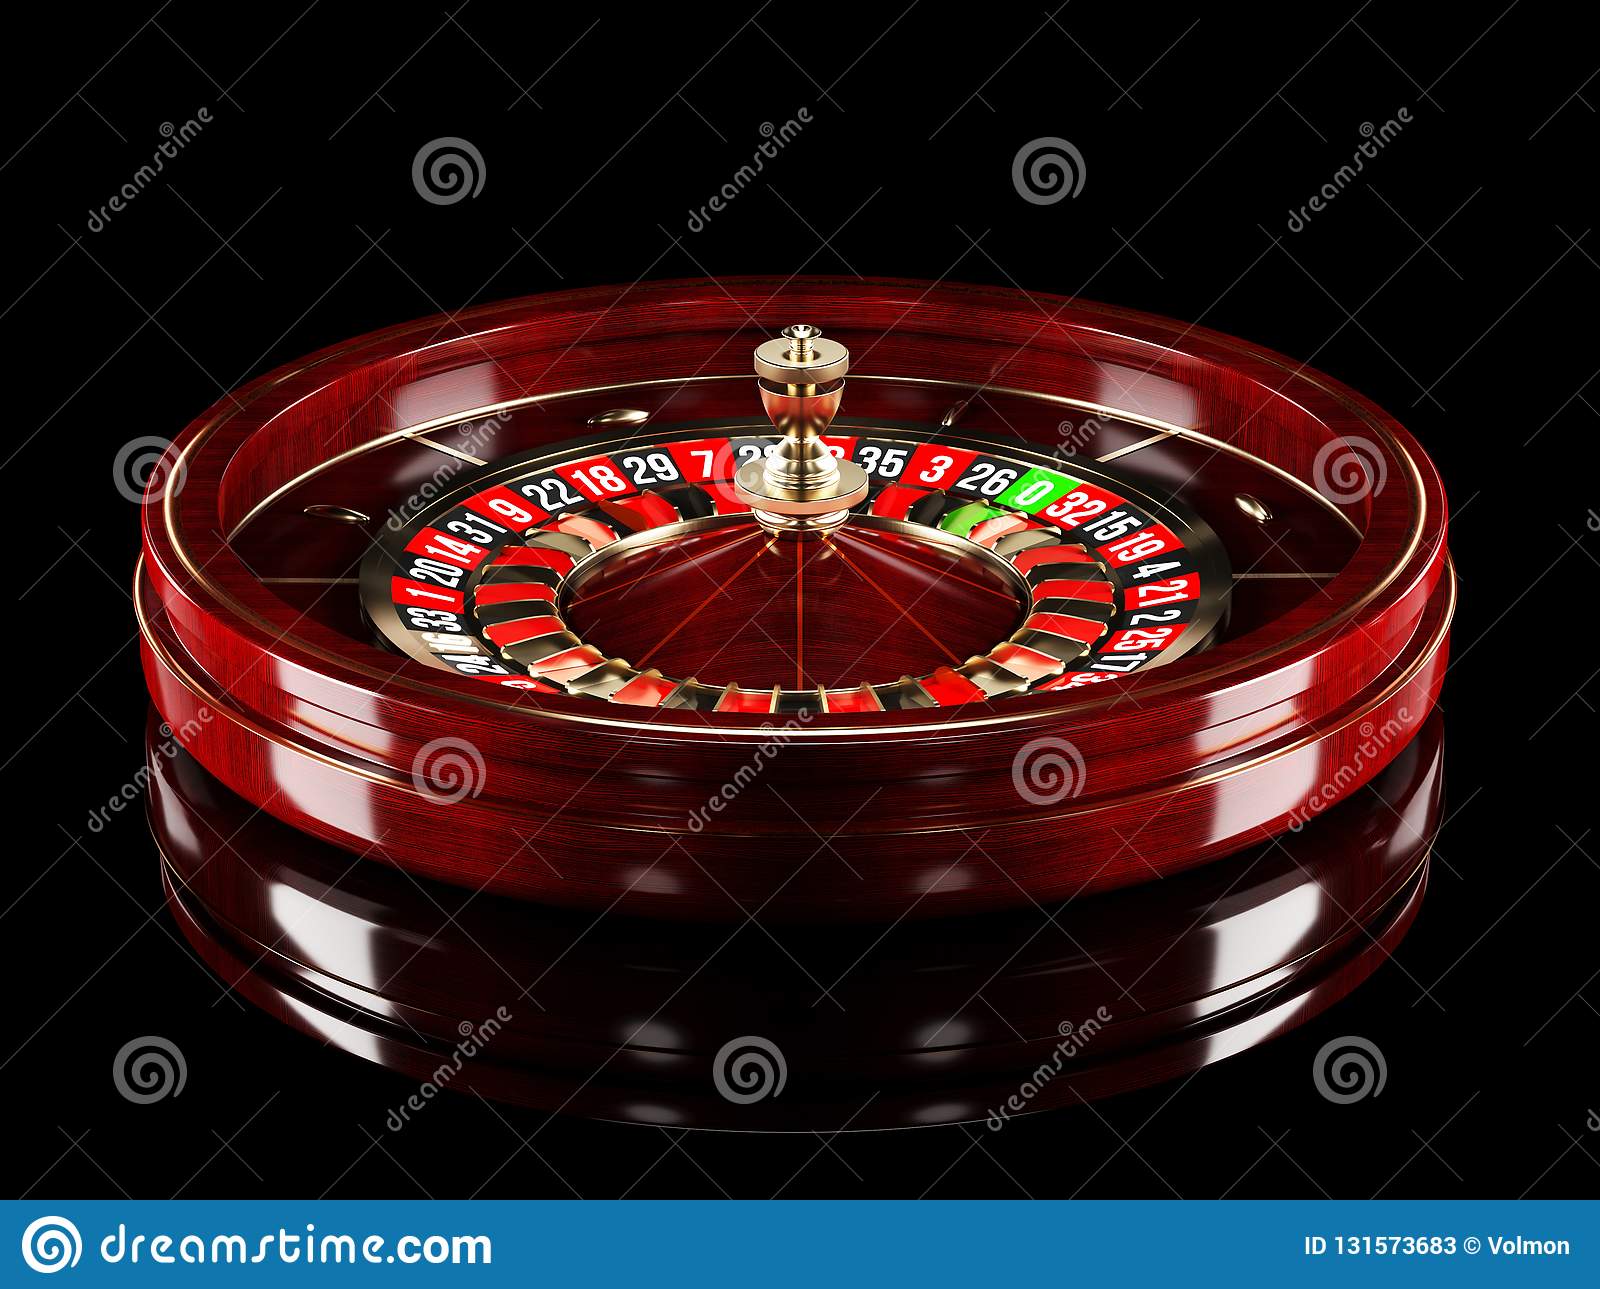 Mobile bitcoin casino